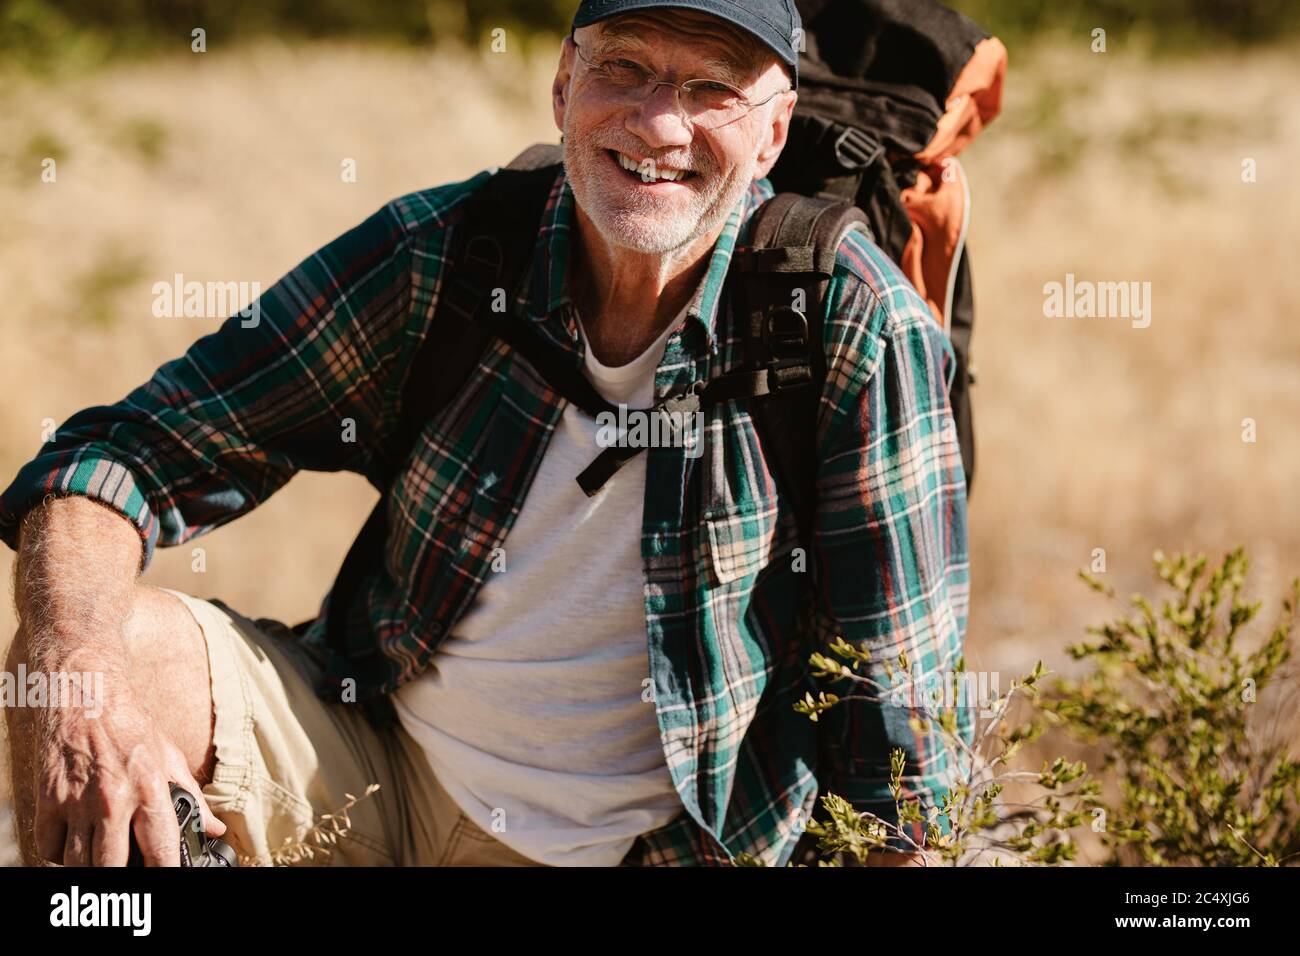 Portrait d'un homme âgé portant un sac à dos, regardant l'appareil photo et souriant. Un randonneur mâle à la retraite prend une pause, assis sur le sol. Banque D'Images